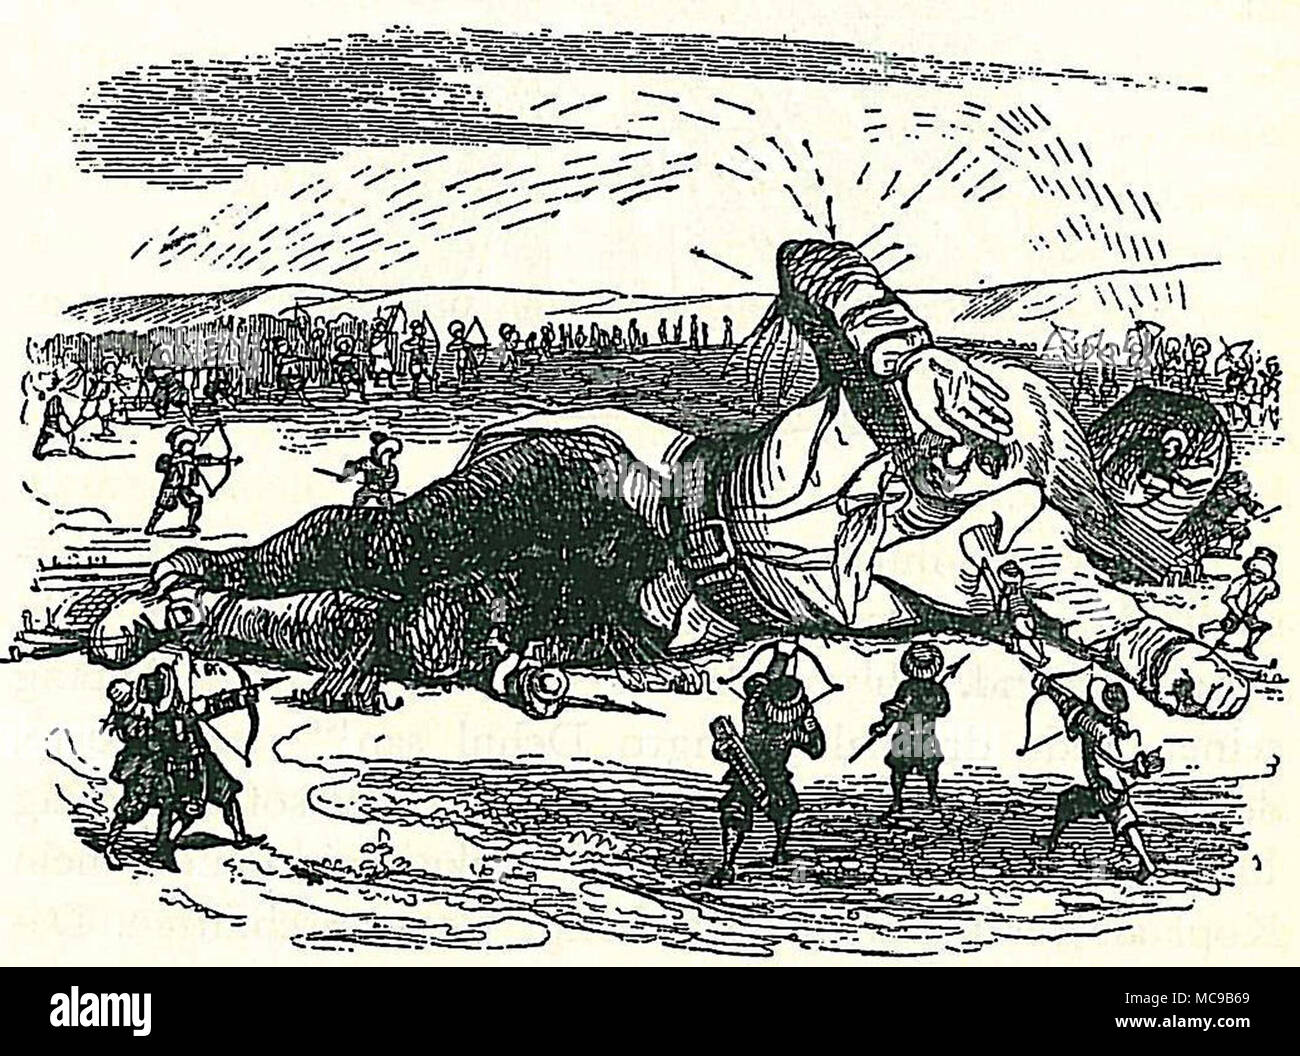 Gulliver catturato dalla Lilliputians, illustrazione di Jonathan Swift del romanzo i viaggi di Gulliver da Grandville Foto Stock